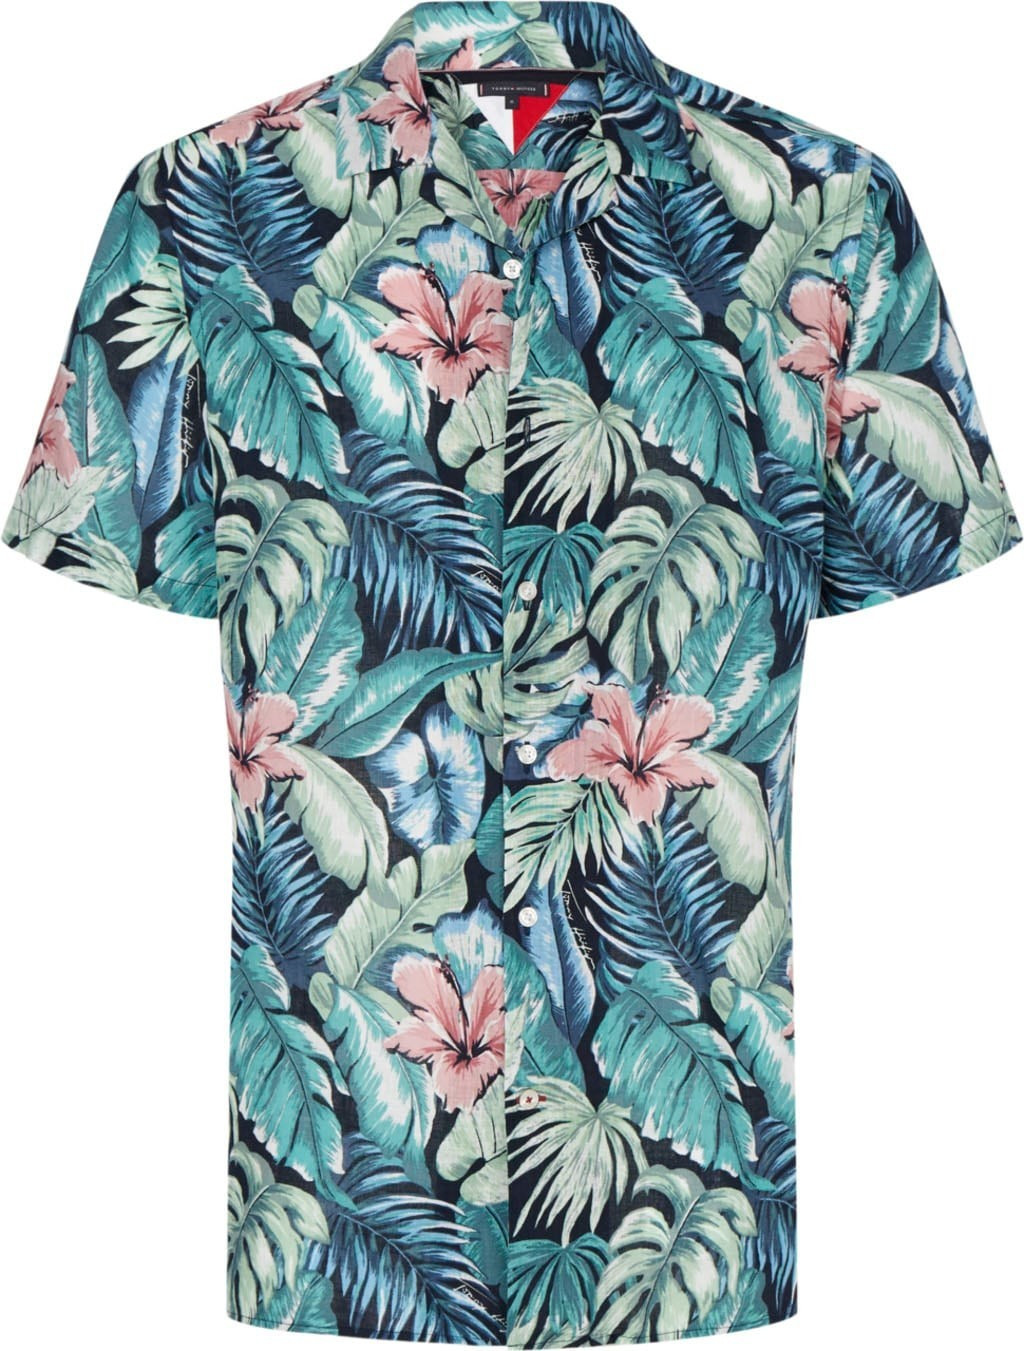 hilfiger hawaiian shirt